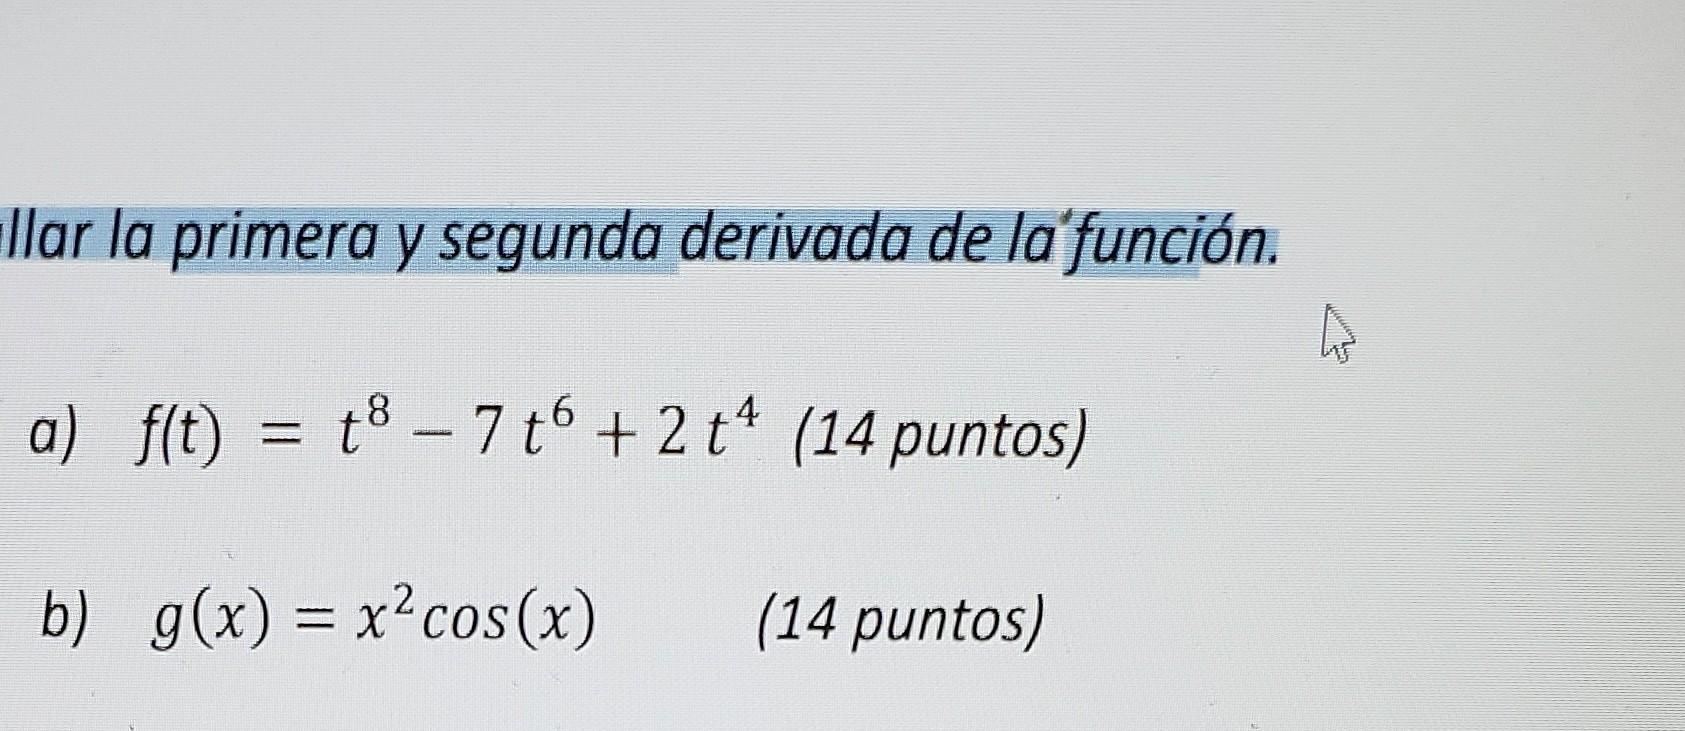 Solved llar la primera y segunda derivada de la función. a) 